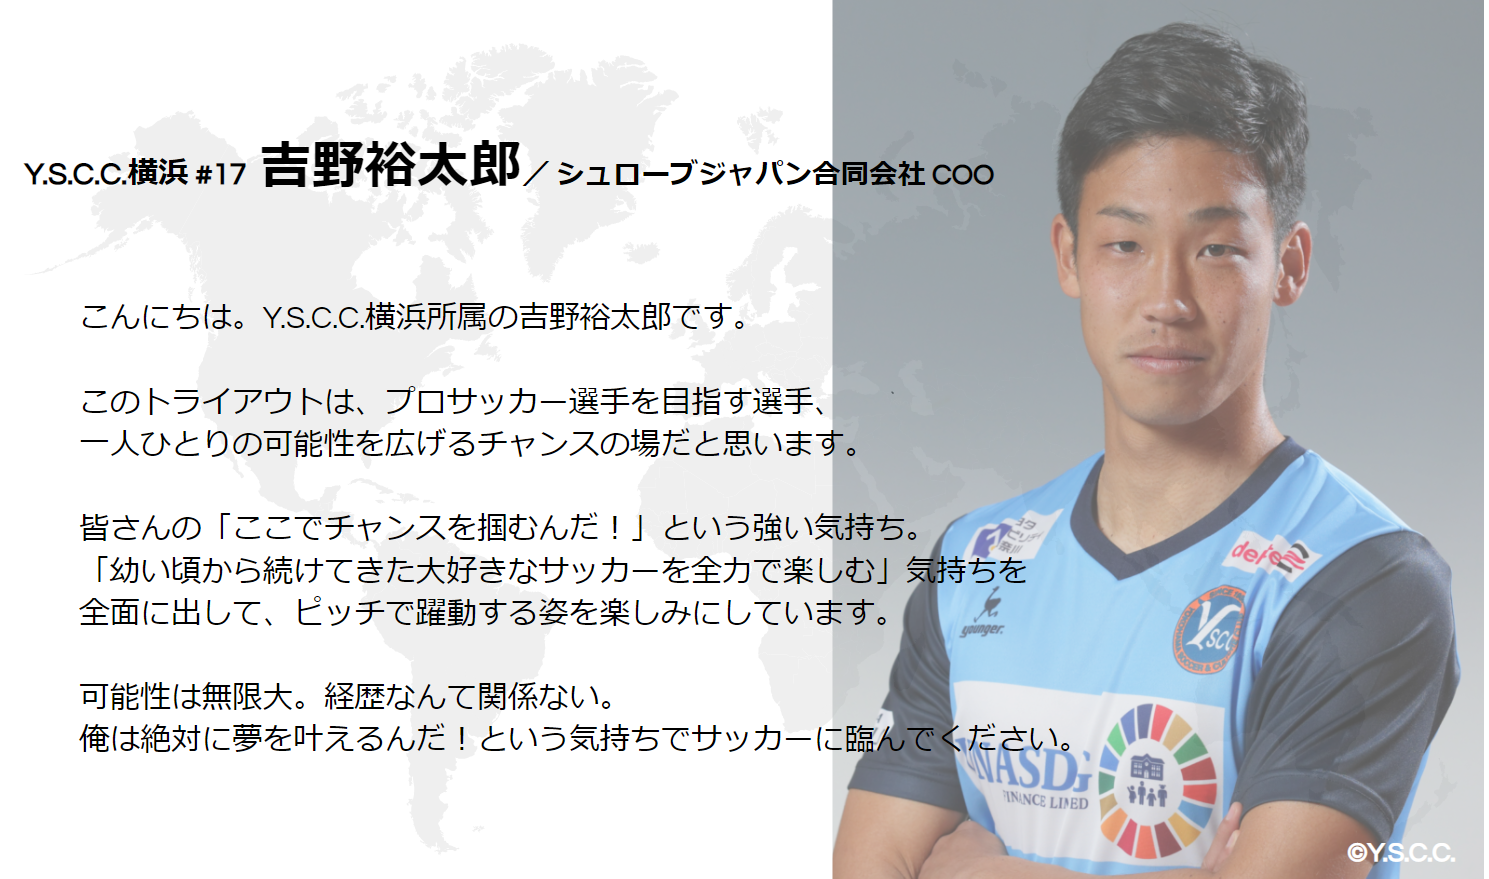 Y.S.C.C.横浜 吉野裕太郎選手からのメッセージ